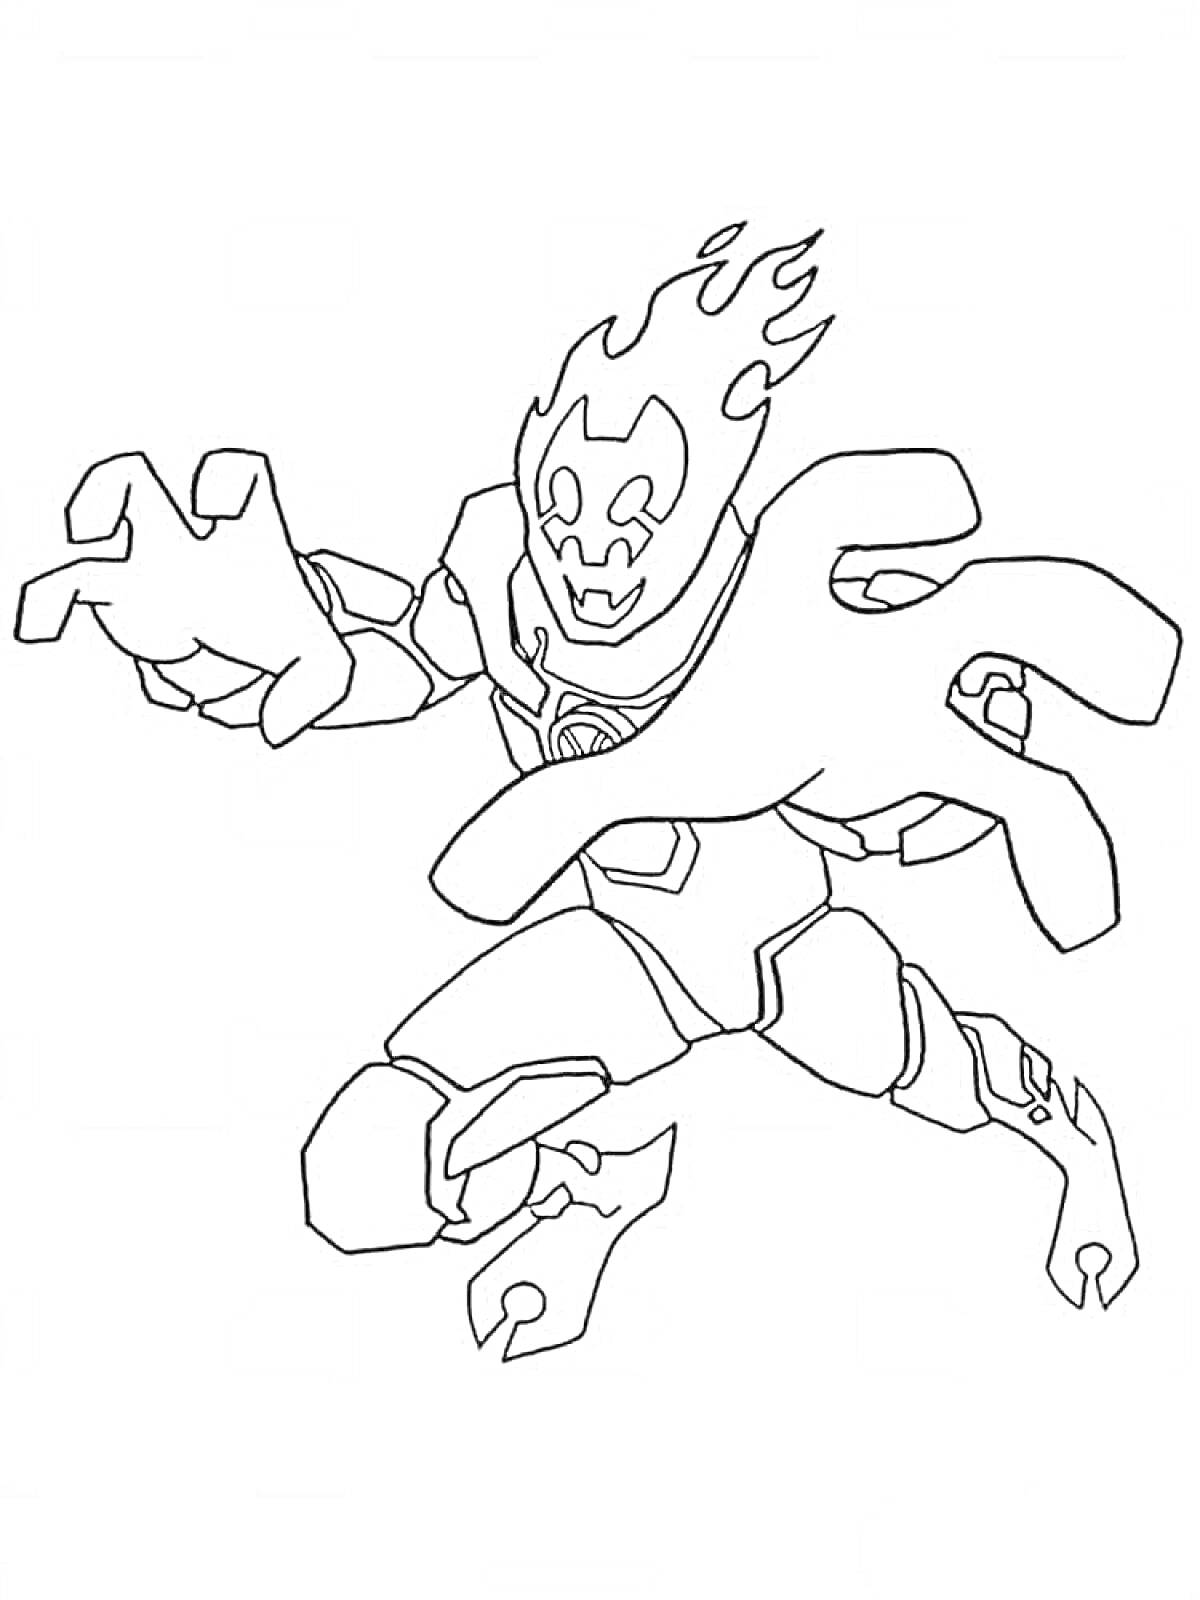 Раскраска Гуманоидный персонаж с пламенем на голове и в боевой стойке с вытянутыми руками